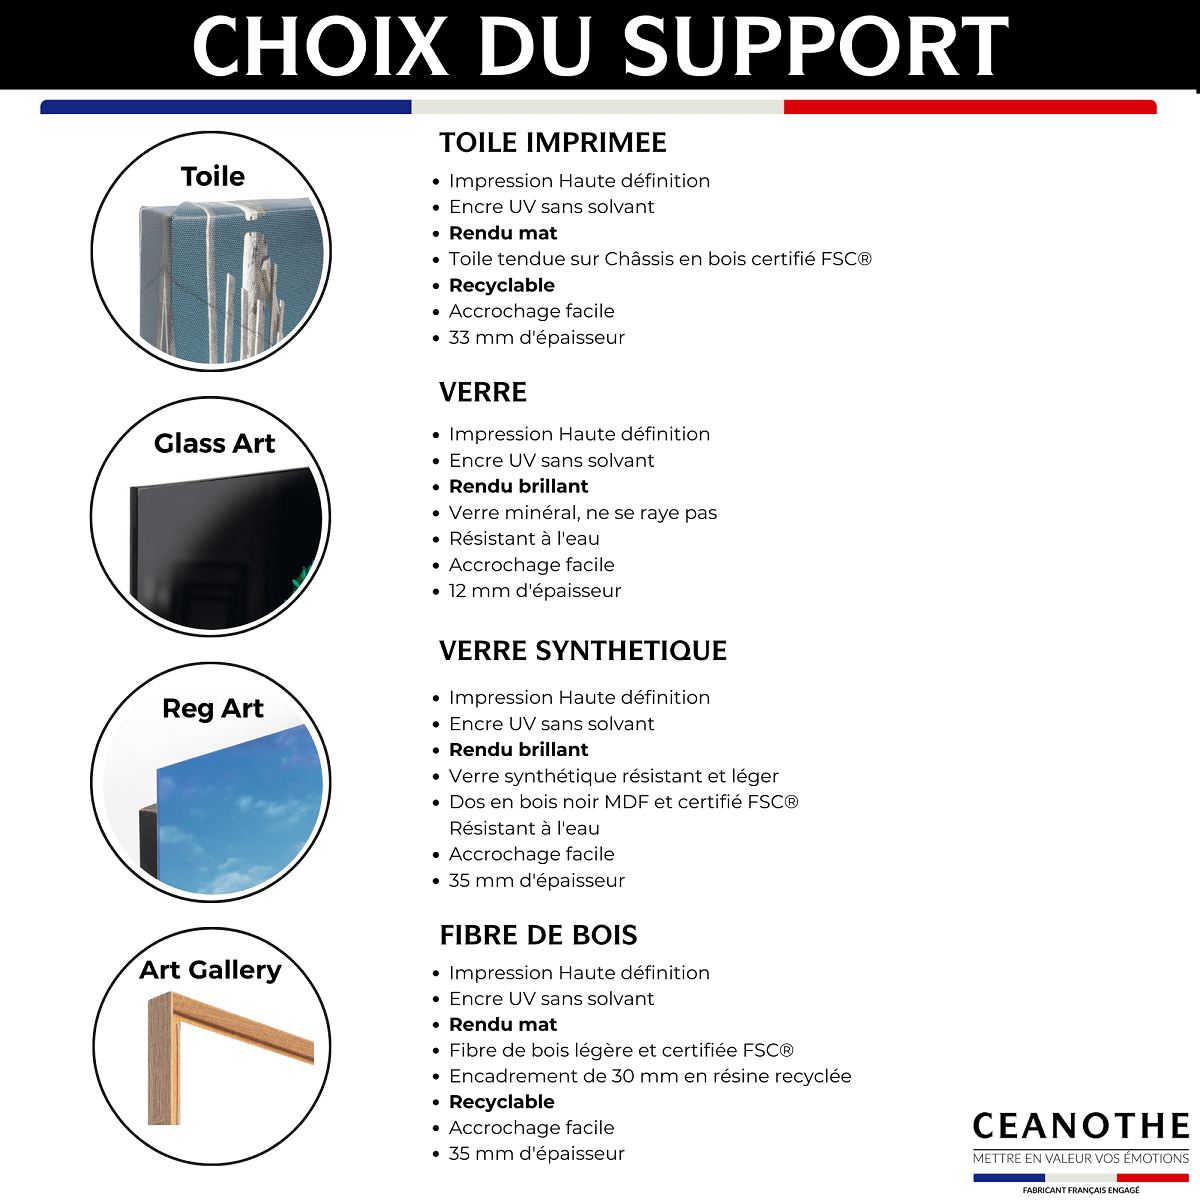 Choix du support